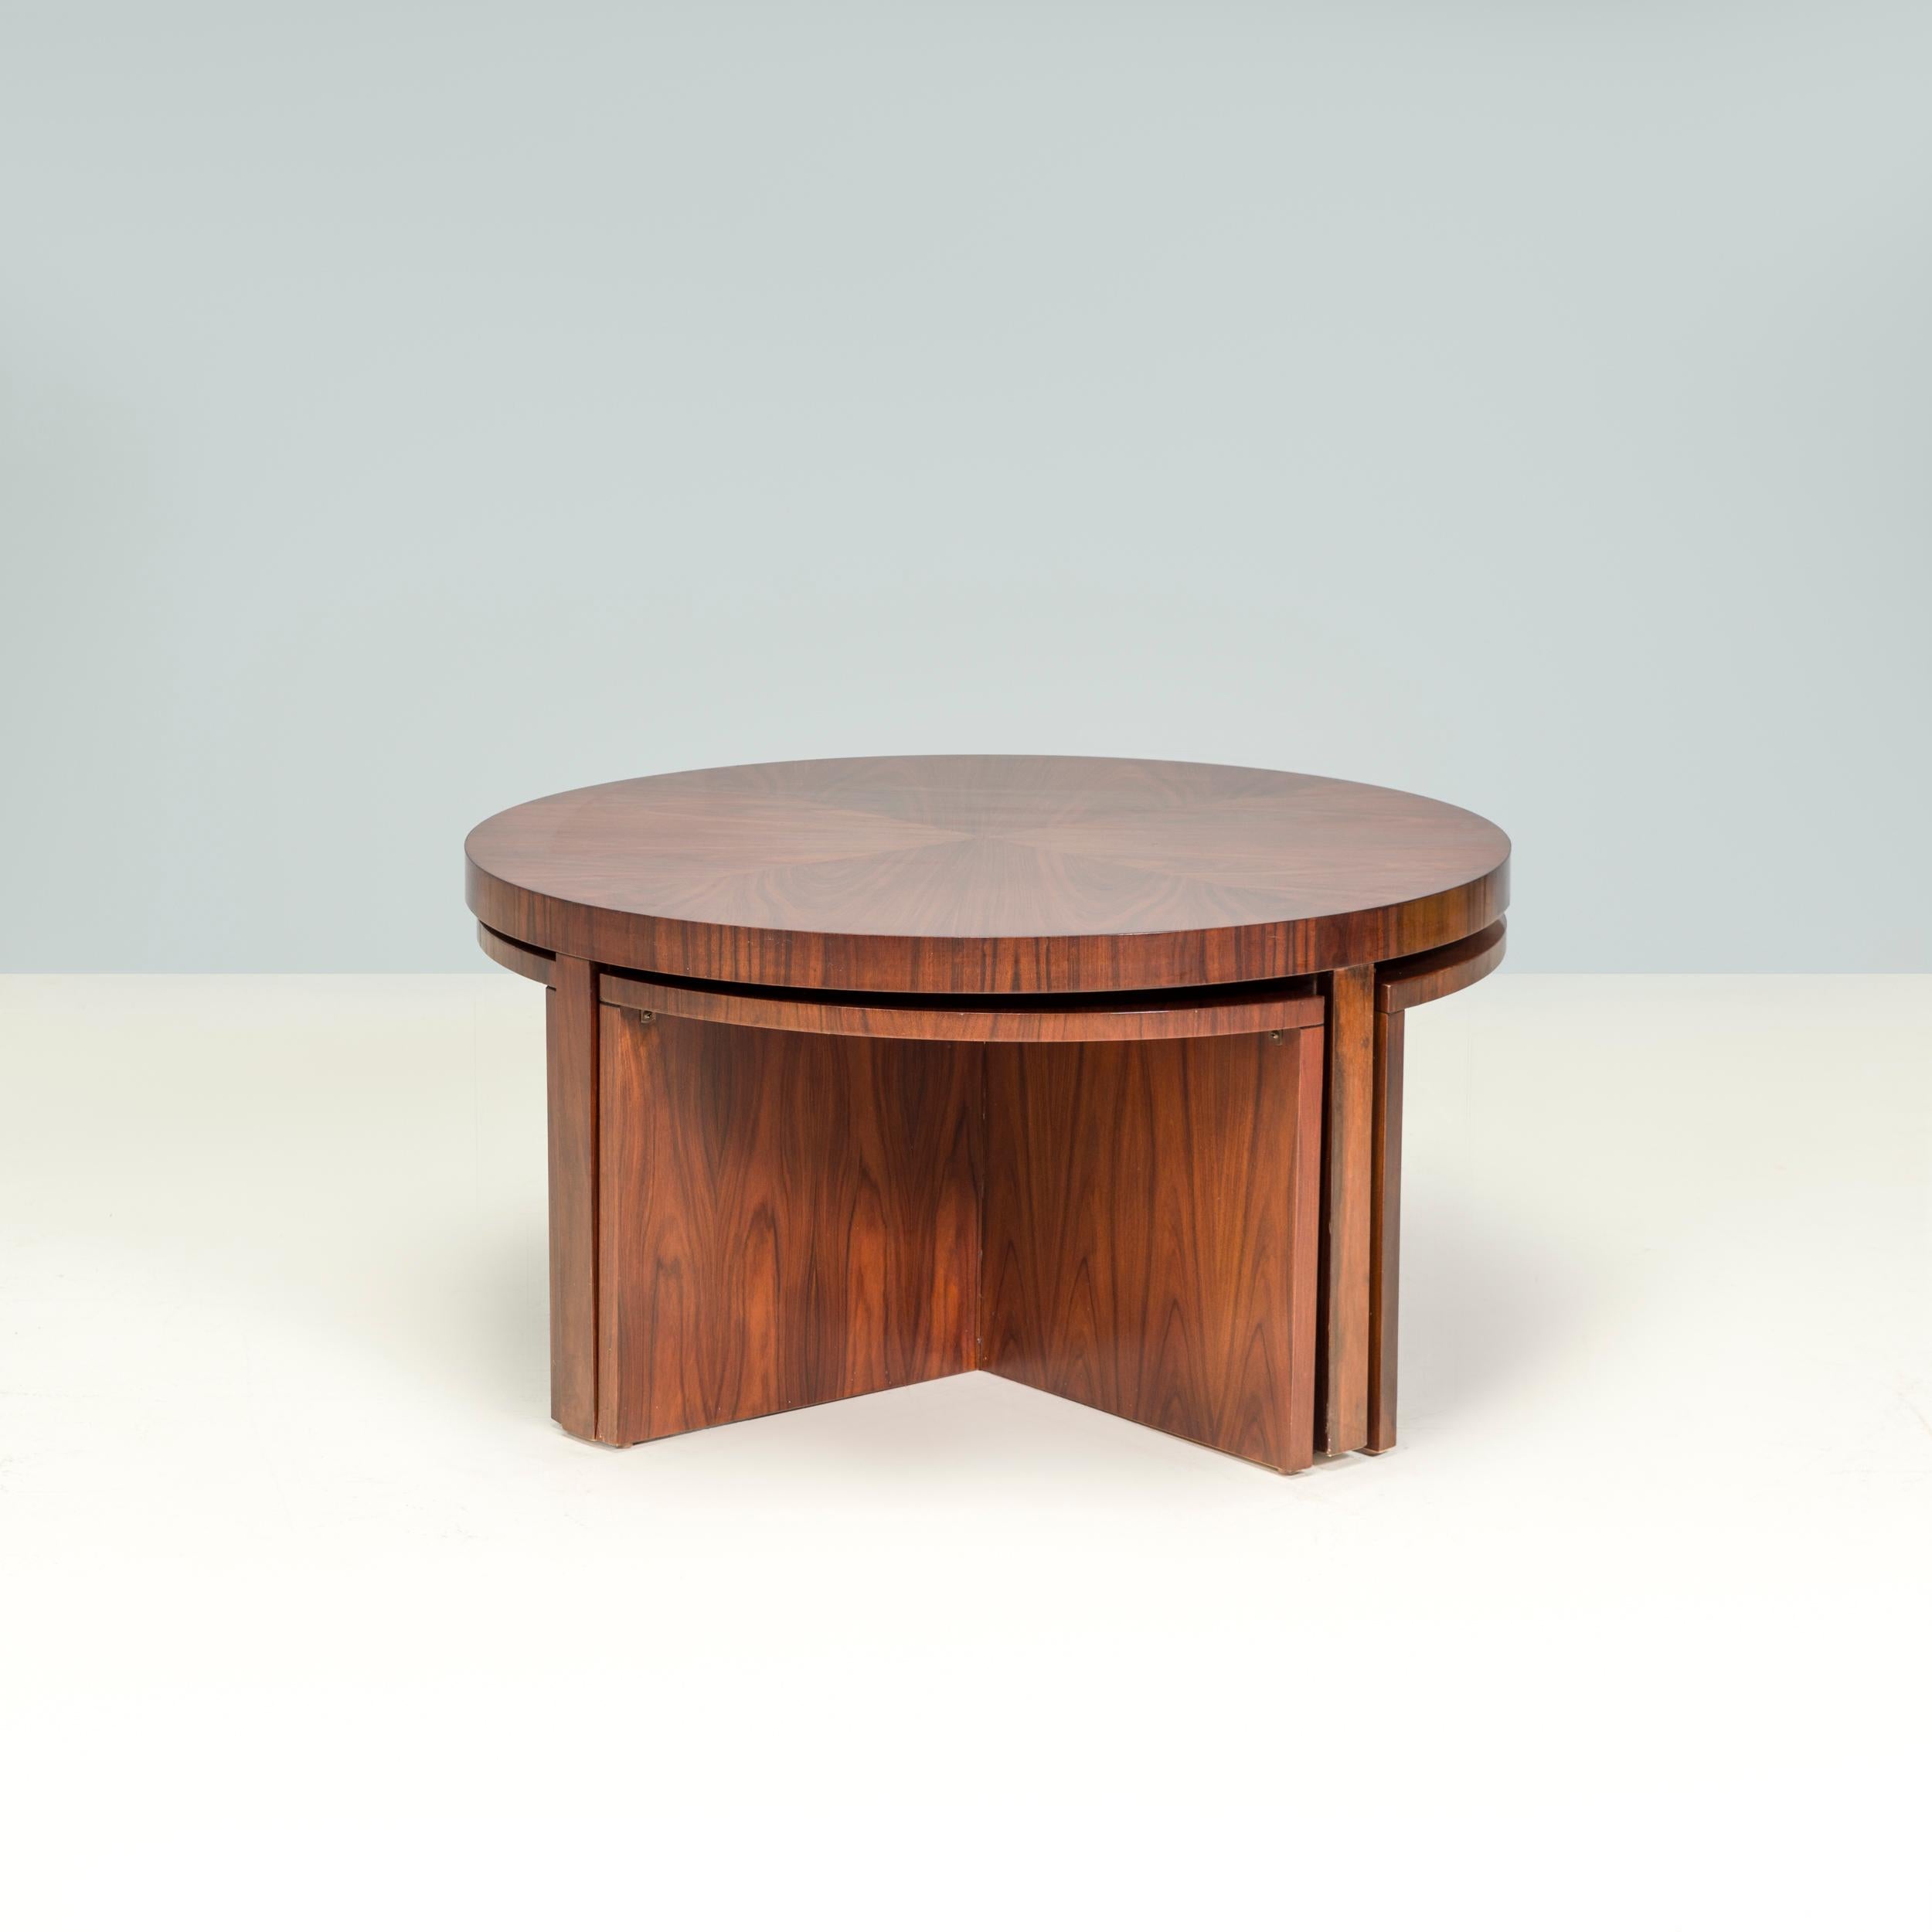 Die Ralph Lauren Duke Collection ist von den 1930er Jahren inspiriert und verbindet elegantes Design mit luxuriösen, handgefertigten Materialien.

Der Duke Couchtisch aus Holz mit Santos Palisanderfurnier besteht aus einem größeren runden Tisch und